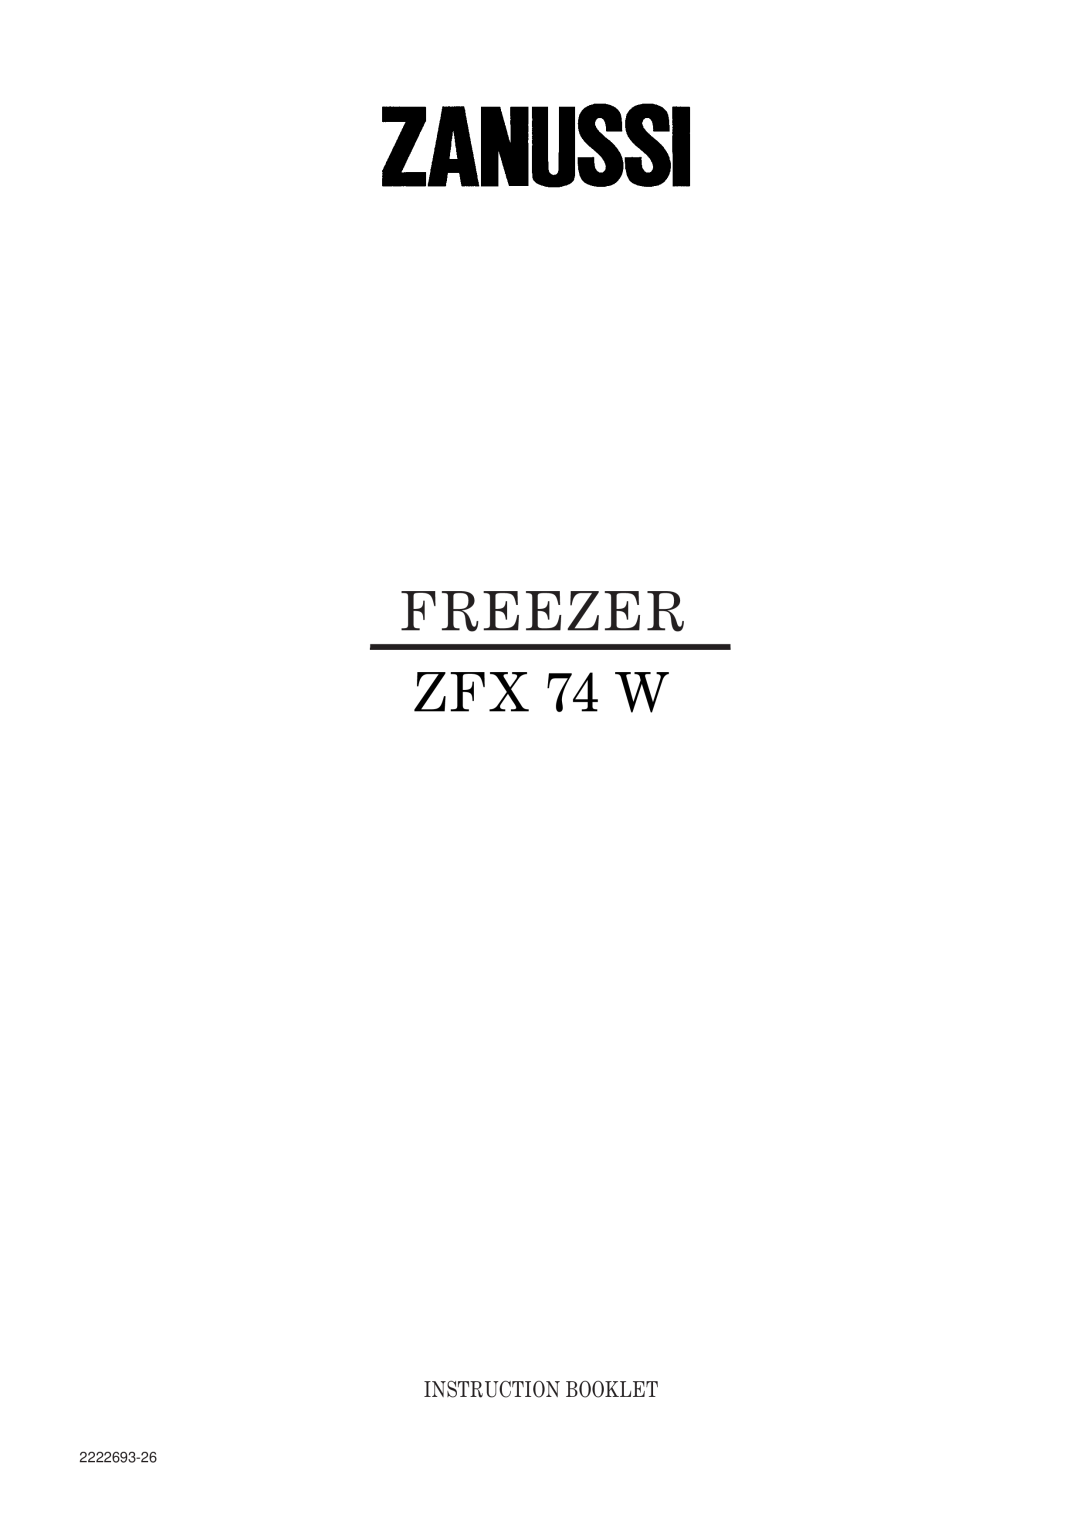 Zanussi manual FREEZER ZFX 74 W, Instruction Booklet, 2222693-26 